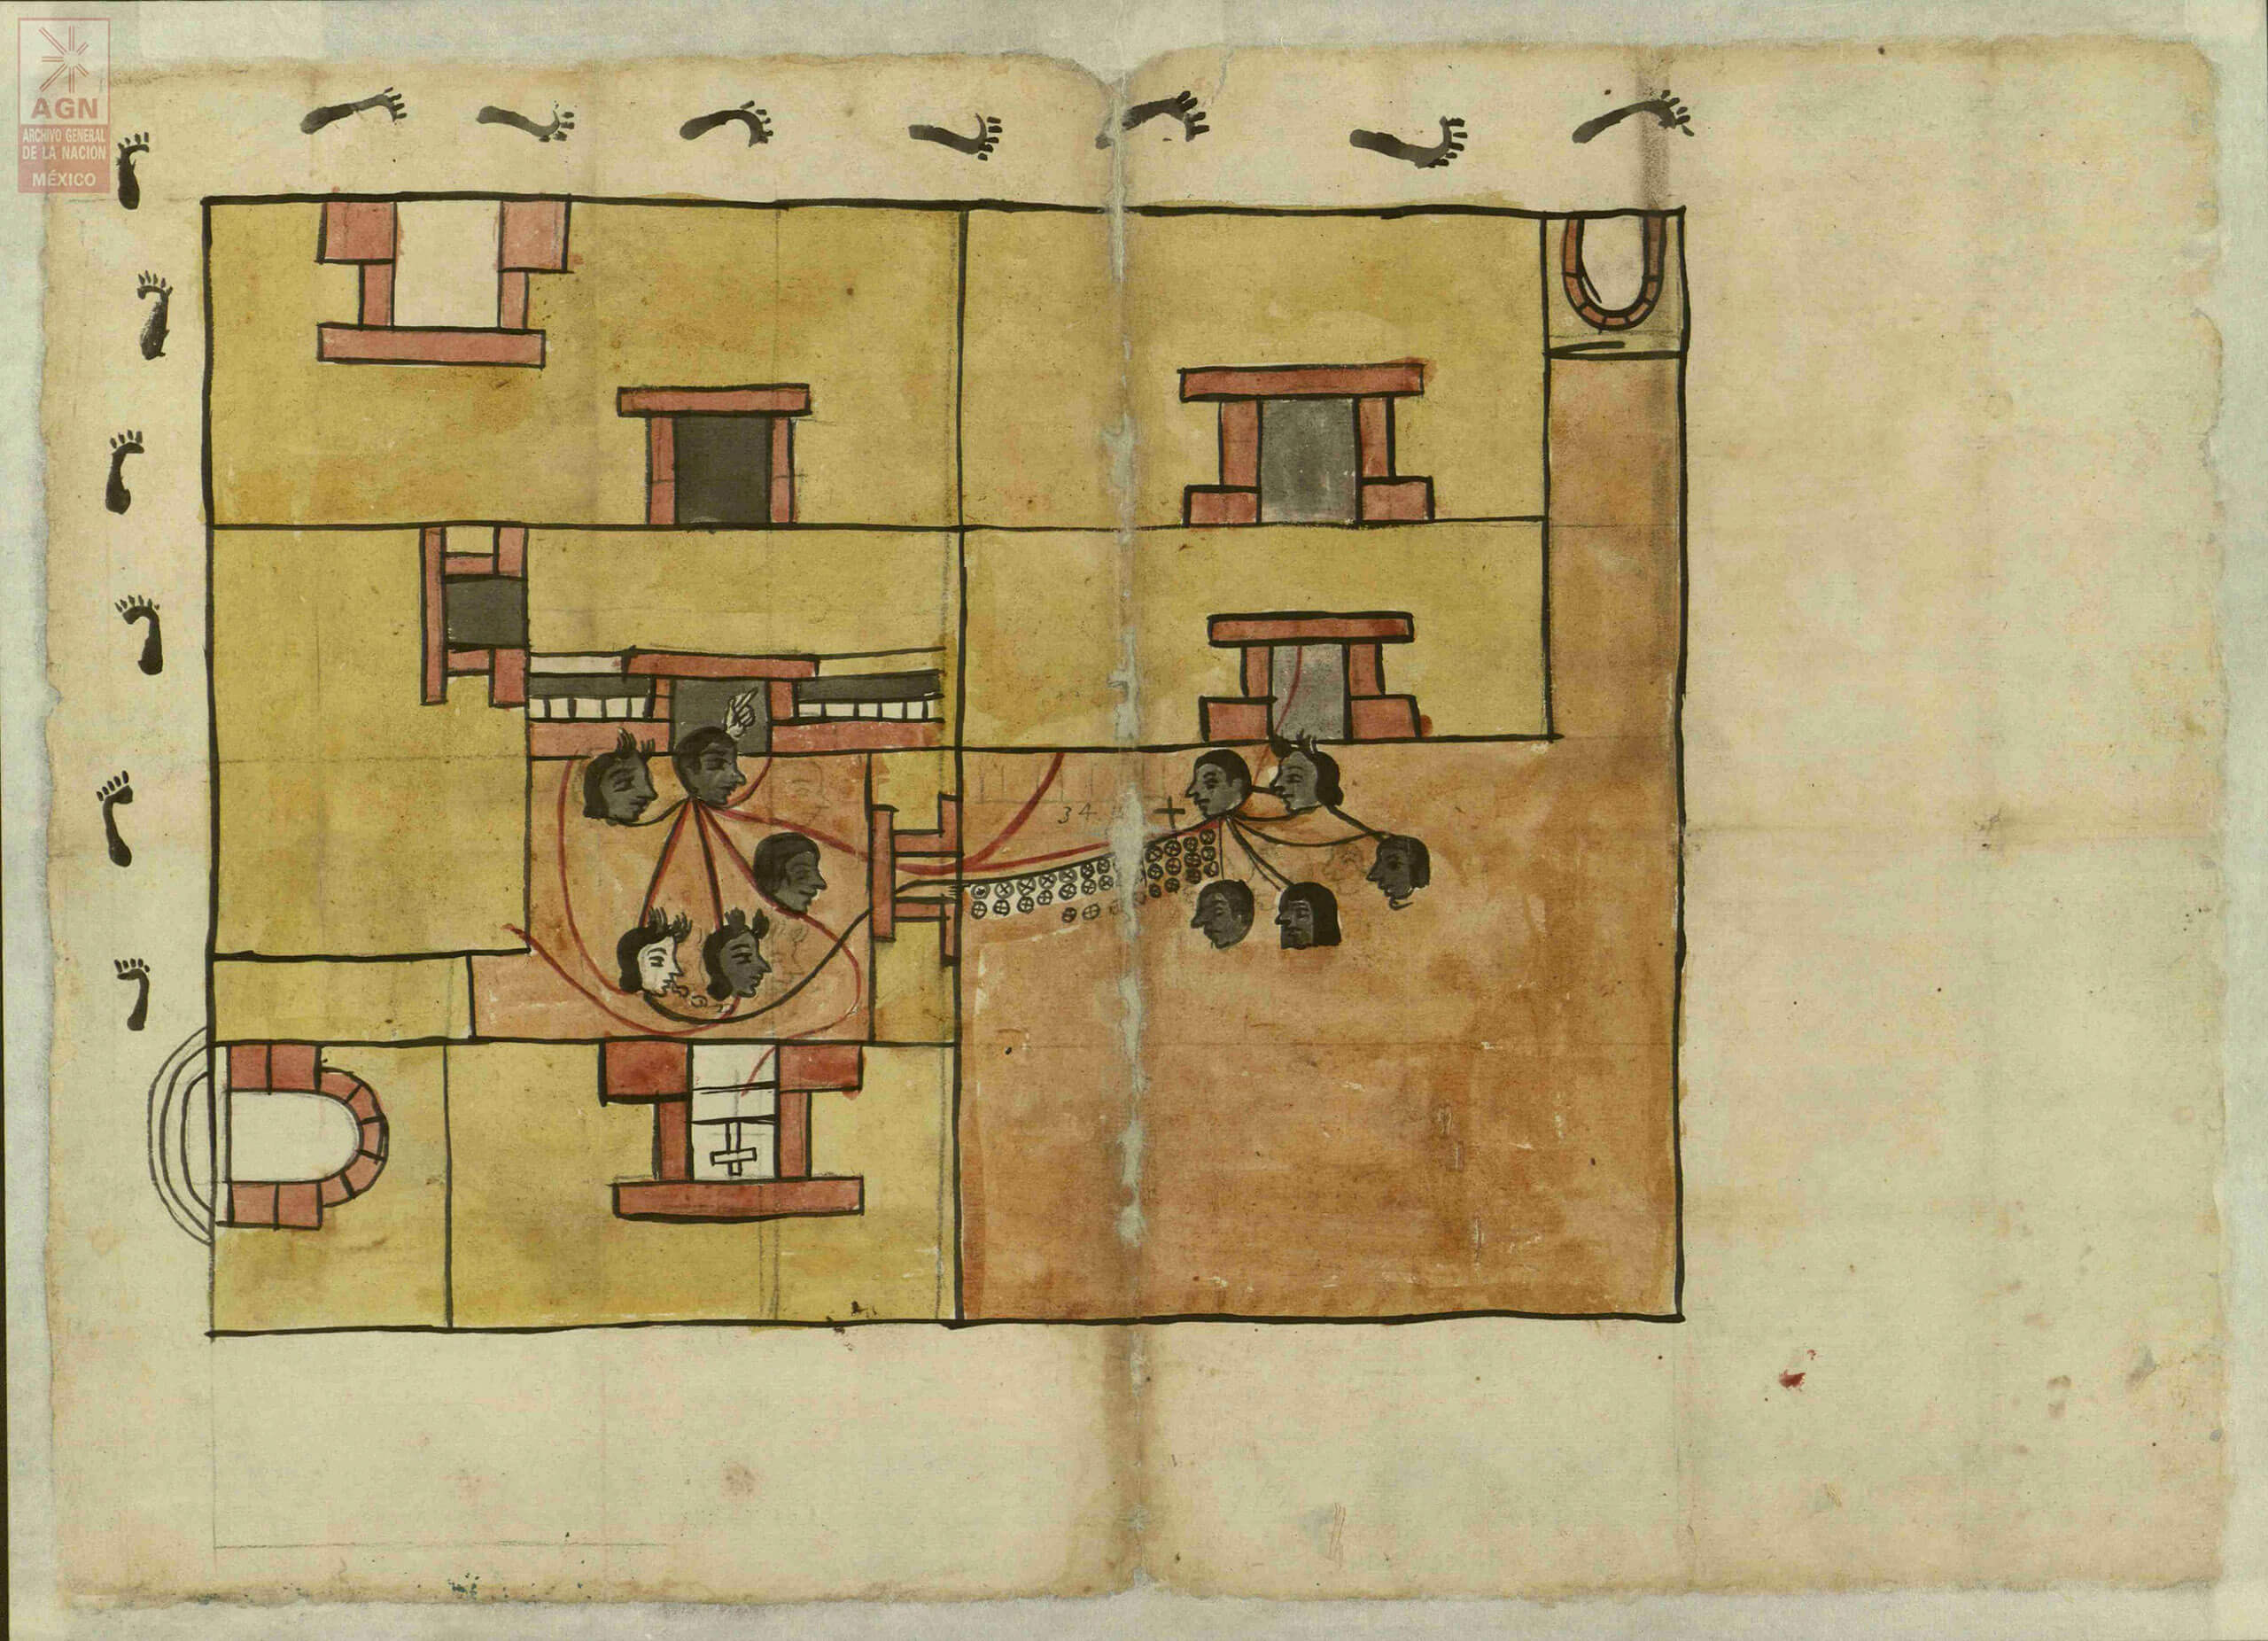 Plano de una casa en Xochimilco, Ciudad de México | In Tlilli in Tlapalli. Imágenes de la nueva tierra: identidad indígena después de la conquista | Museo Amparo, Puebla